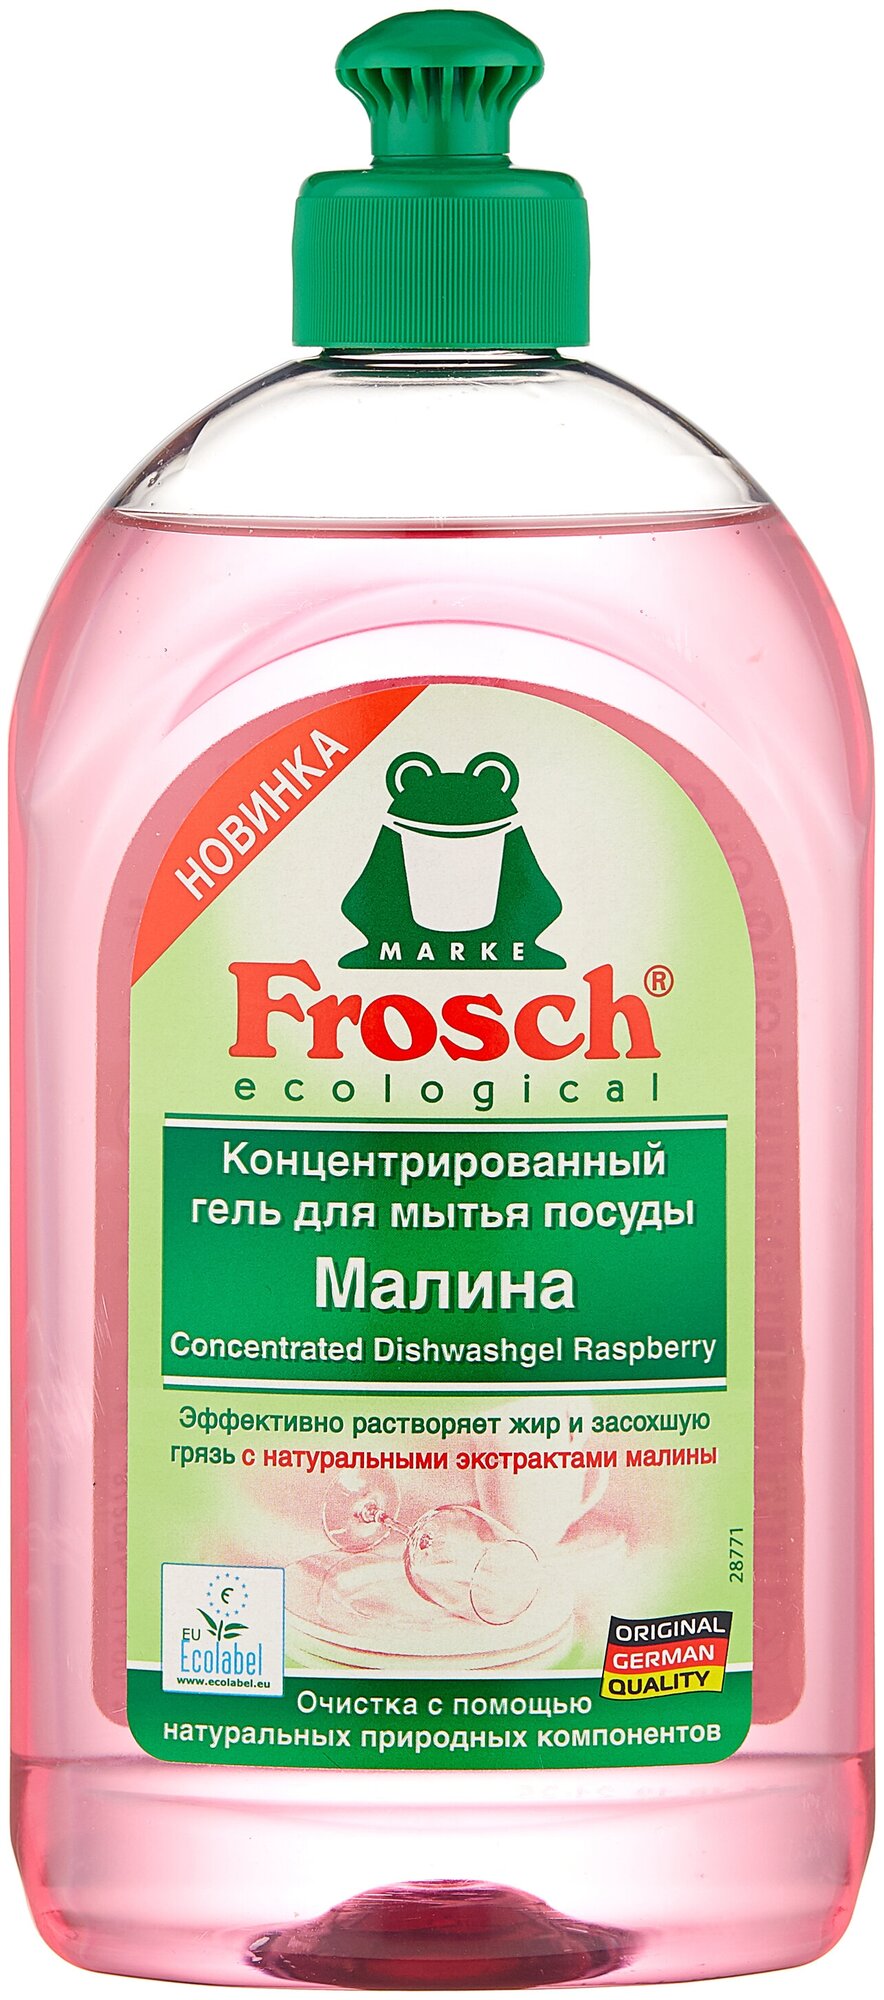 Frosch Концентрированный гель для мытья посуды Малина, 0.5 л